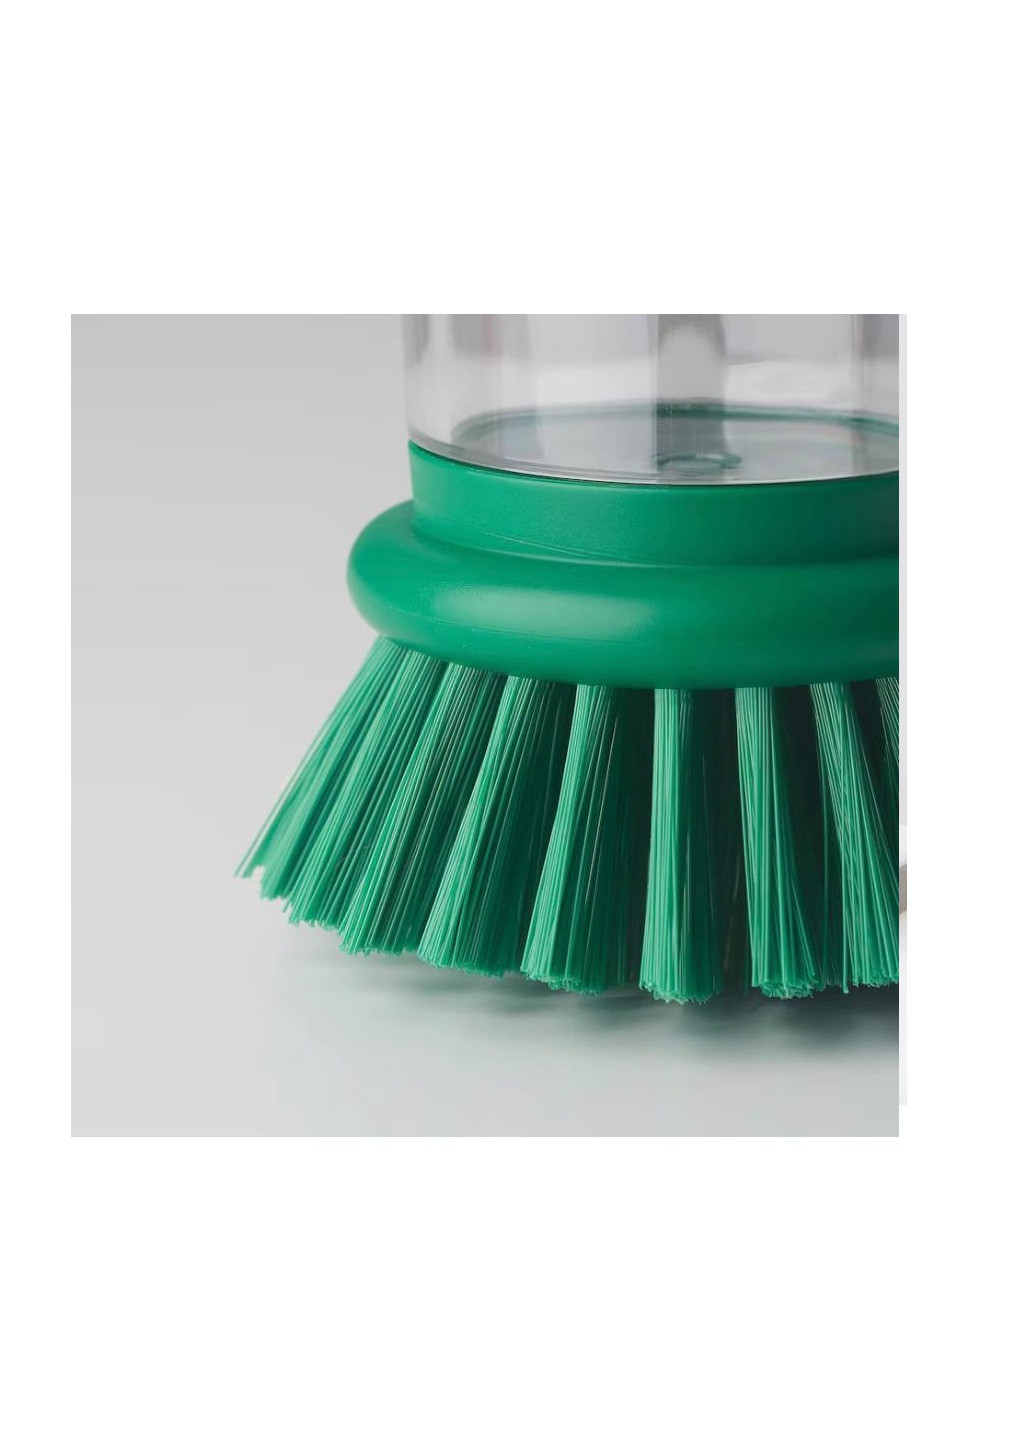 Щітка для миття посуду із дозатором, яскраво-зелена IKEA videveckmal (260006374)